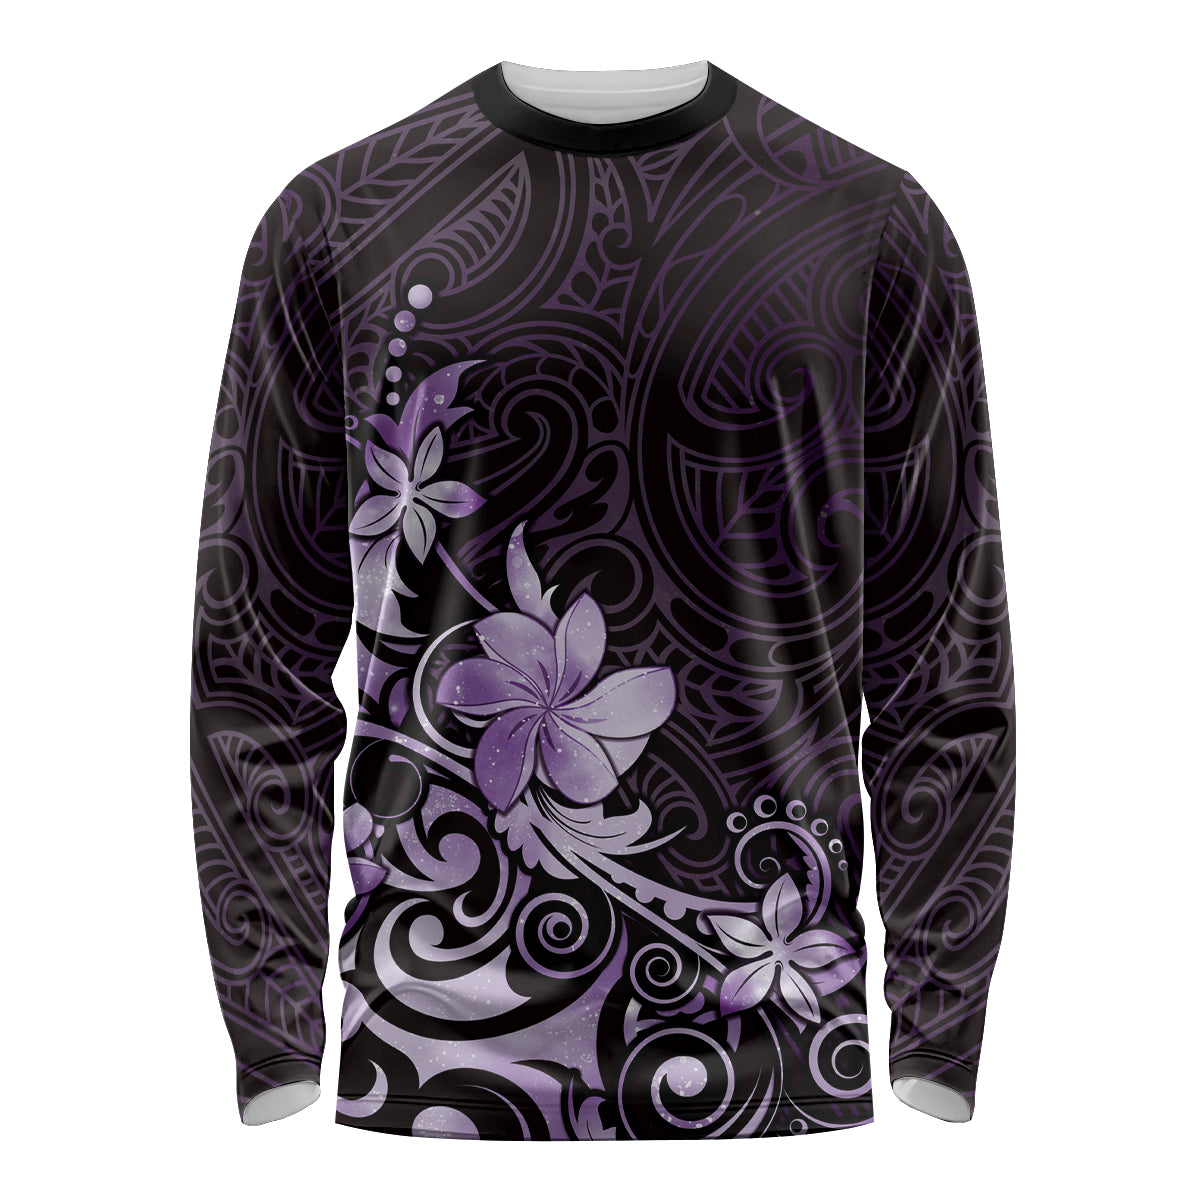 Matariki New Zealand Long Sleeve Shirt Maori Pattern Purple Galaxy